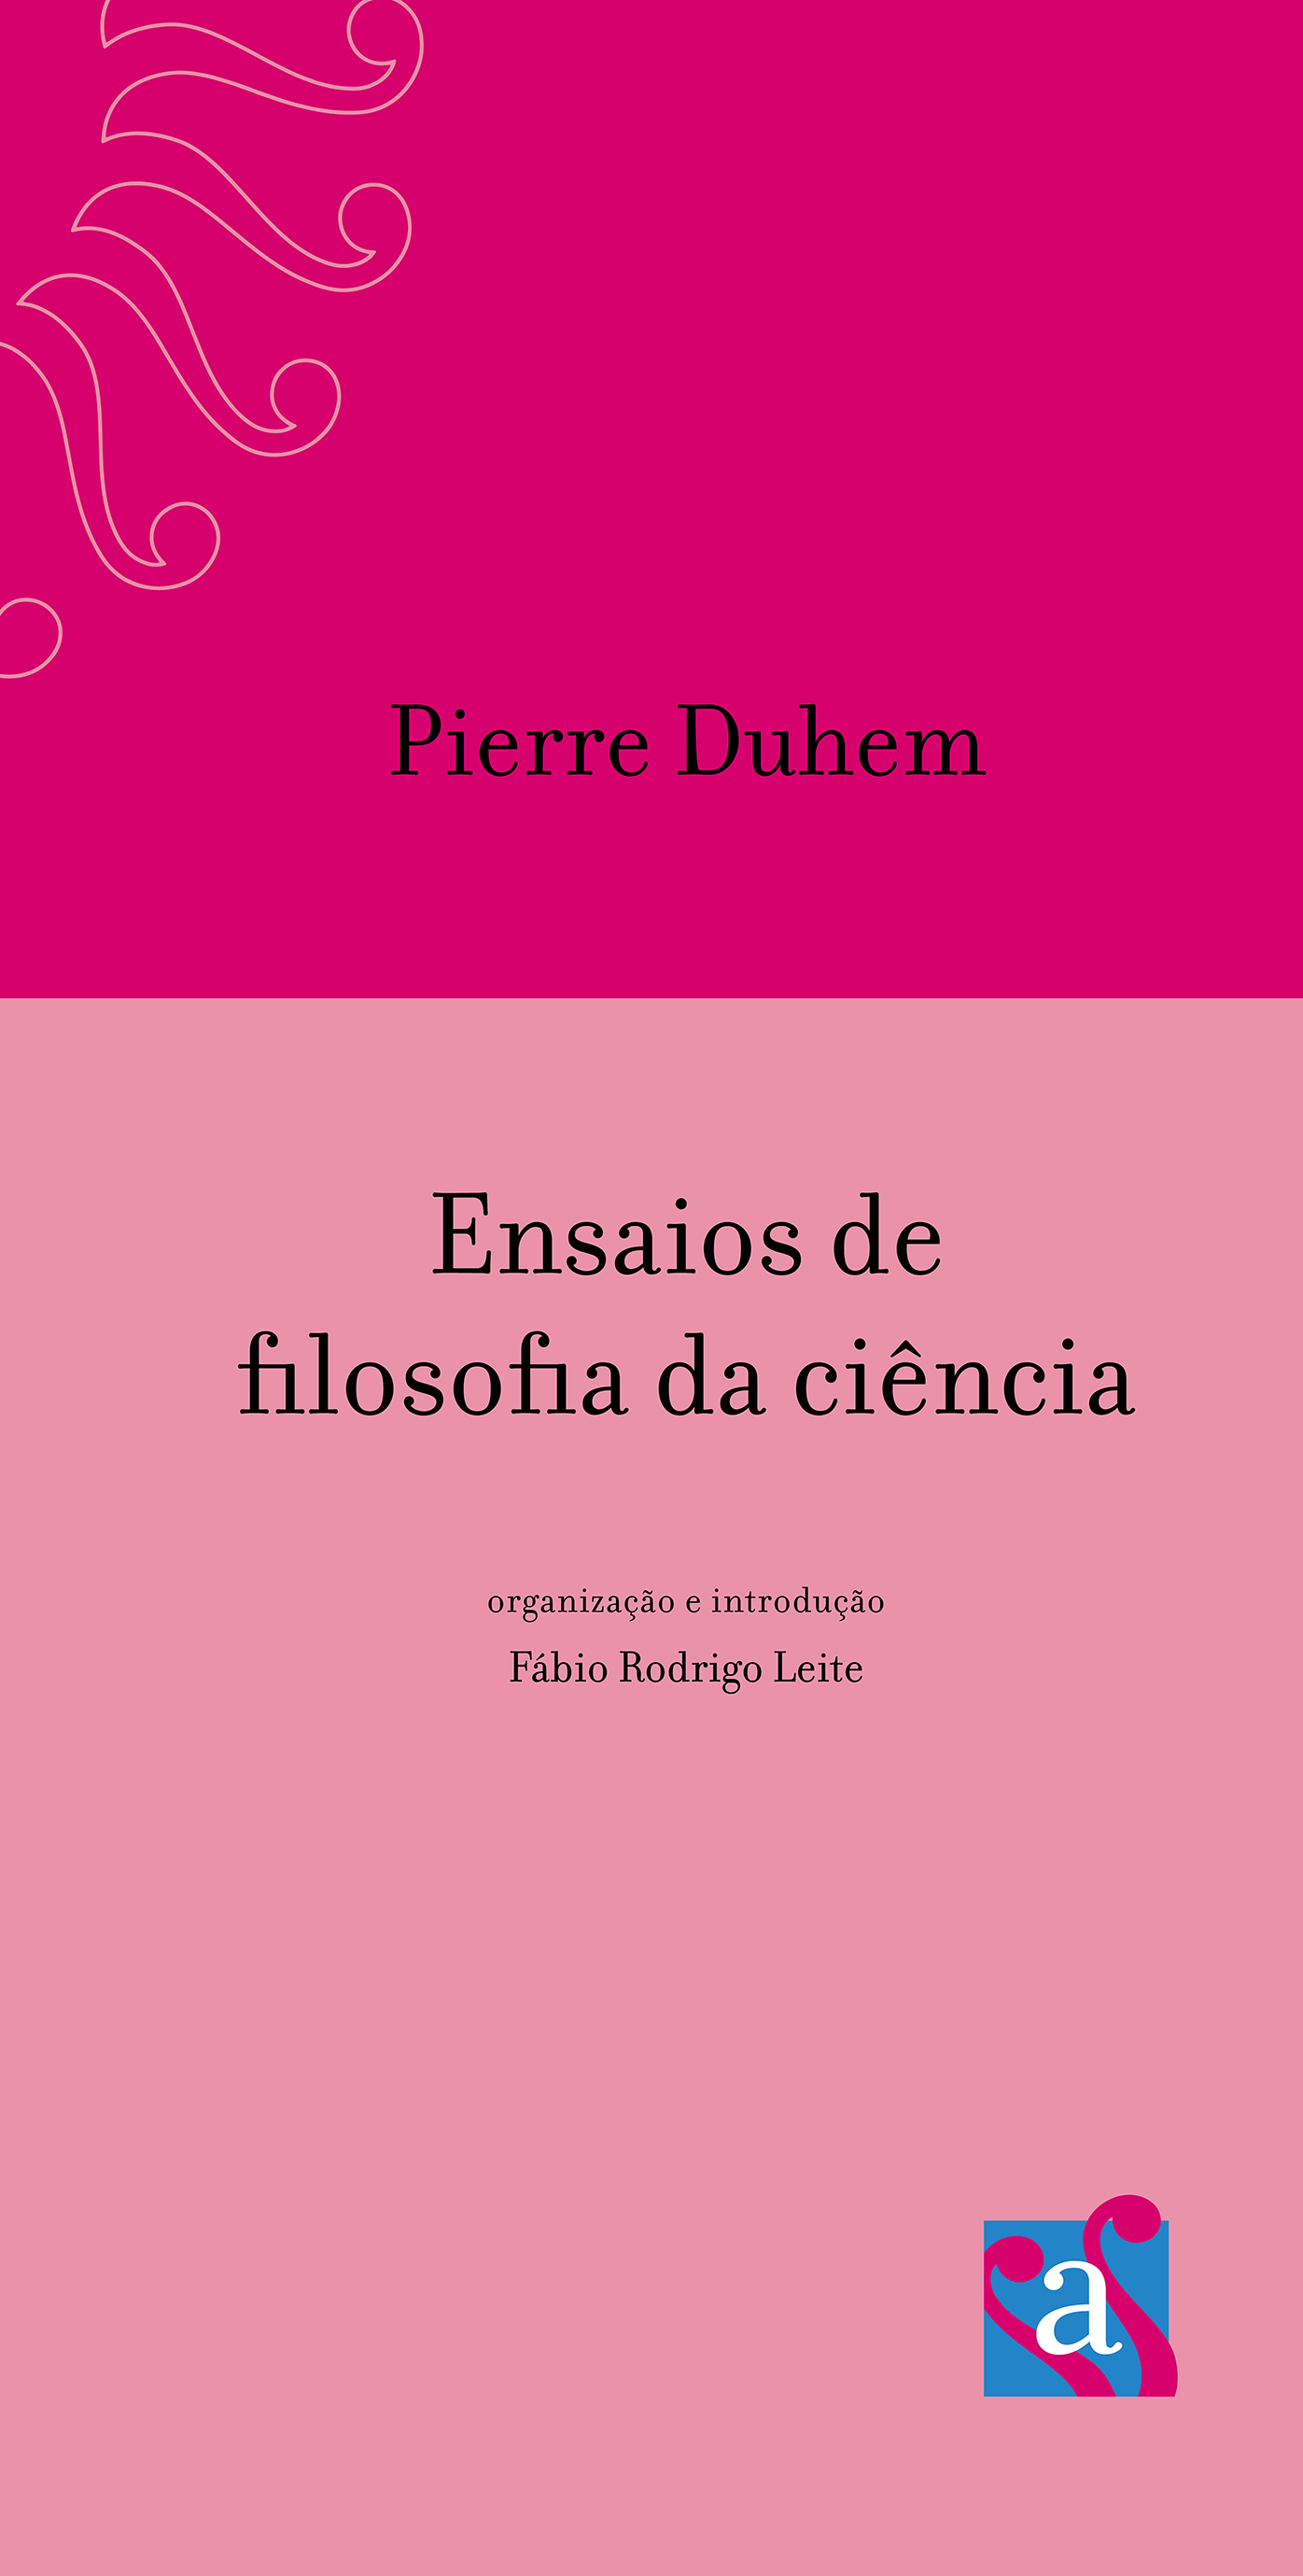 Capa do livro Pierre Duhem: Ensaios de filosofia da ciência, de Pierre Duhem, traduzido por Fábio Leite